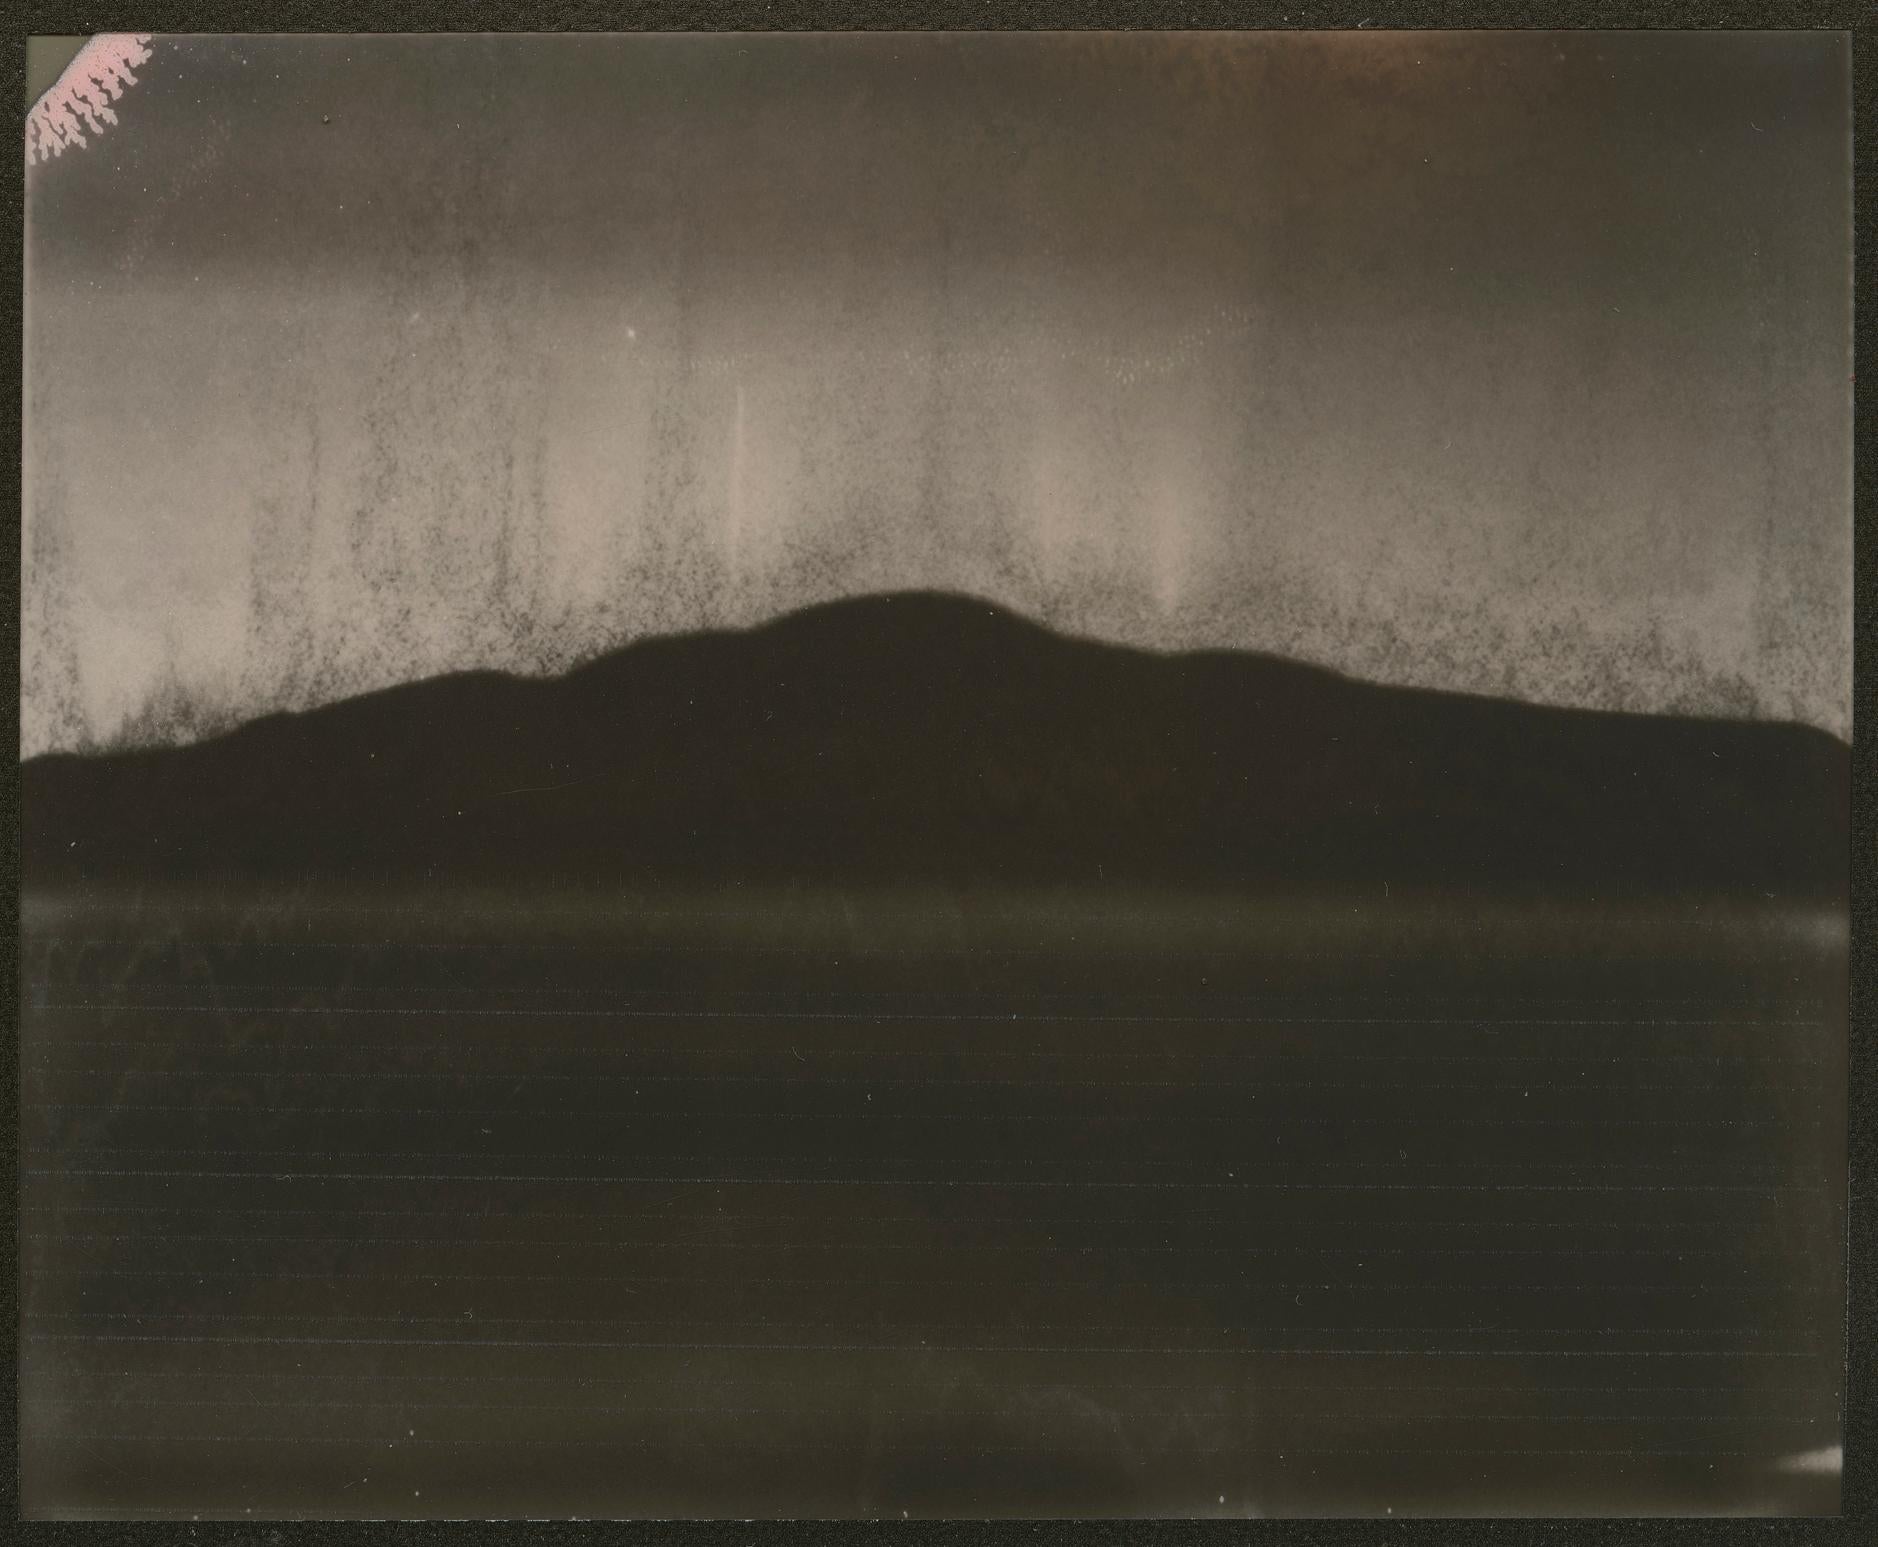 Stefanie Schneider Landscape Photograph - Dawn (Deconstructivism) - Contemporary, Expired Polaroid